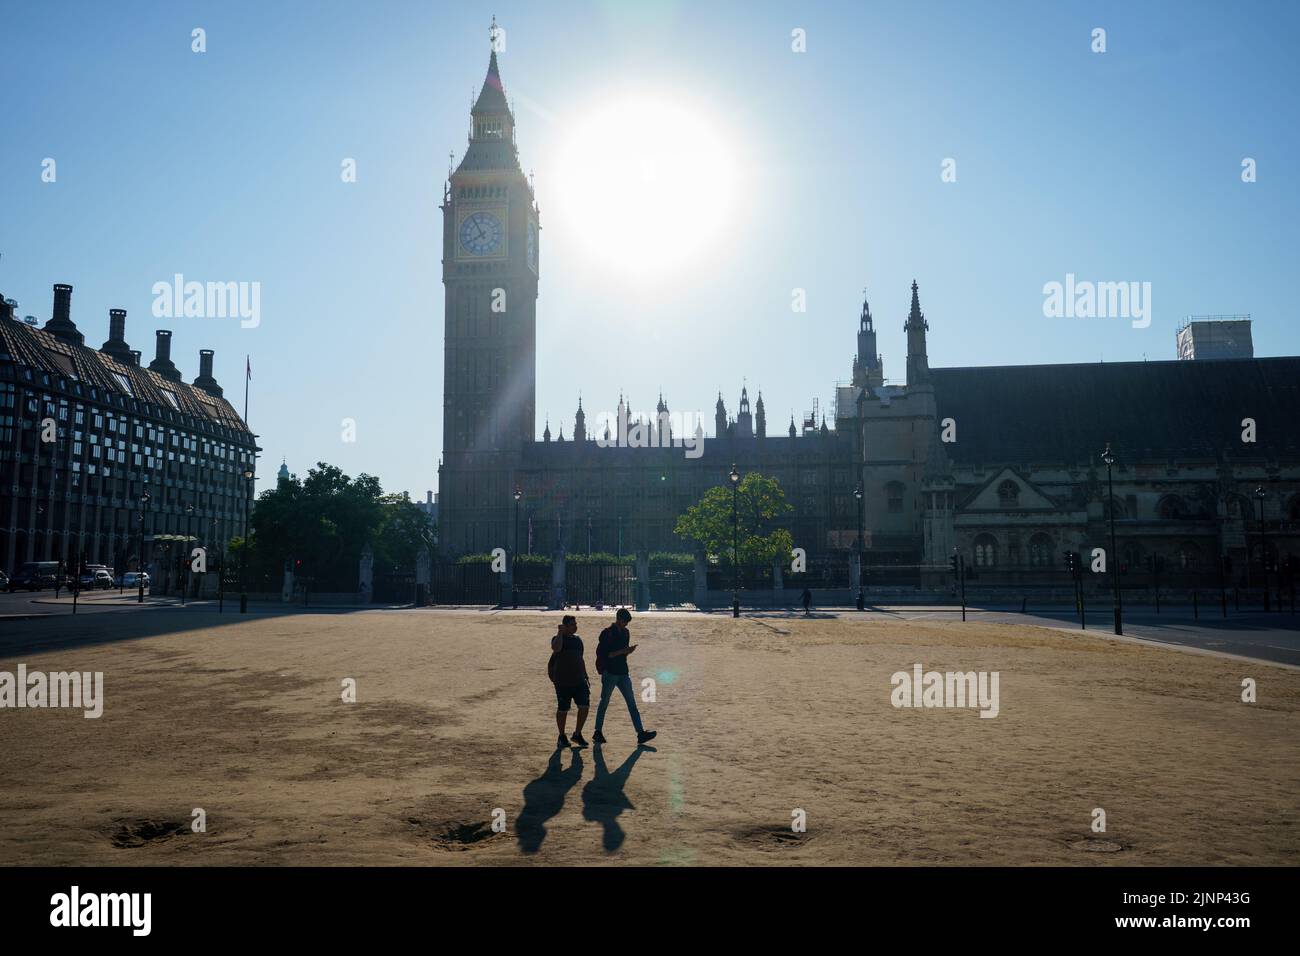 Dos personas cruzan pasto reseco en Parliament Square, Westminster, Londres, como una sequía ha sido declarada en partes de Inglaterra después del verano más seco de 50 años. Fecha de la foto: Sábado 13 de agosto de 2022. Foto de stock